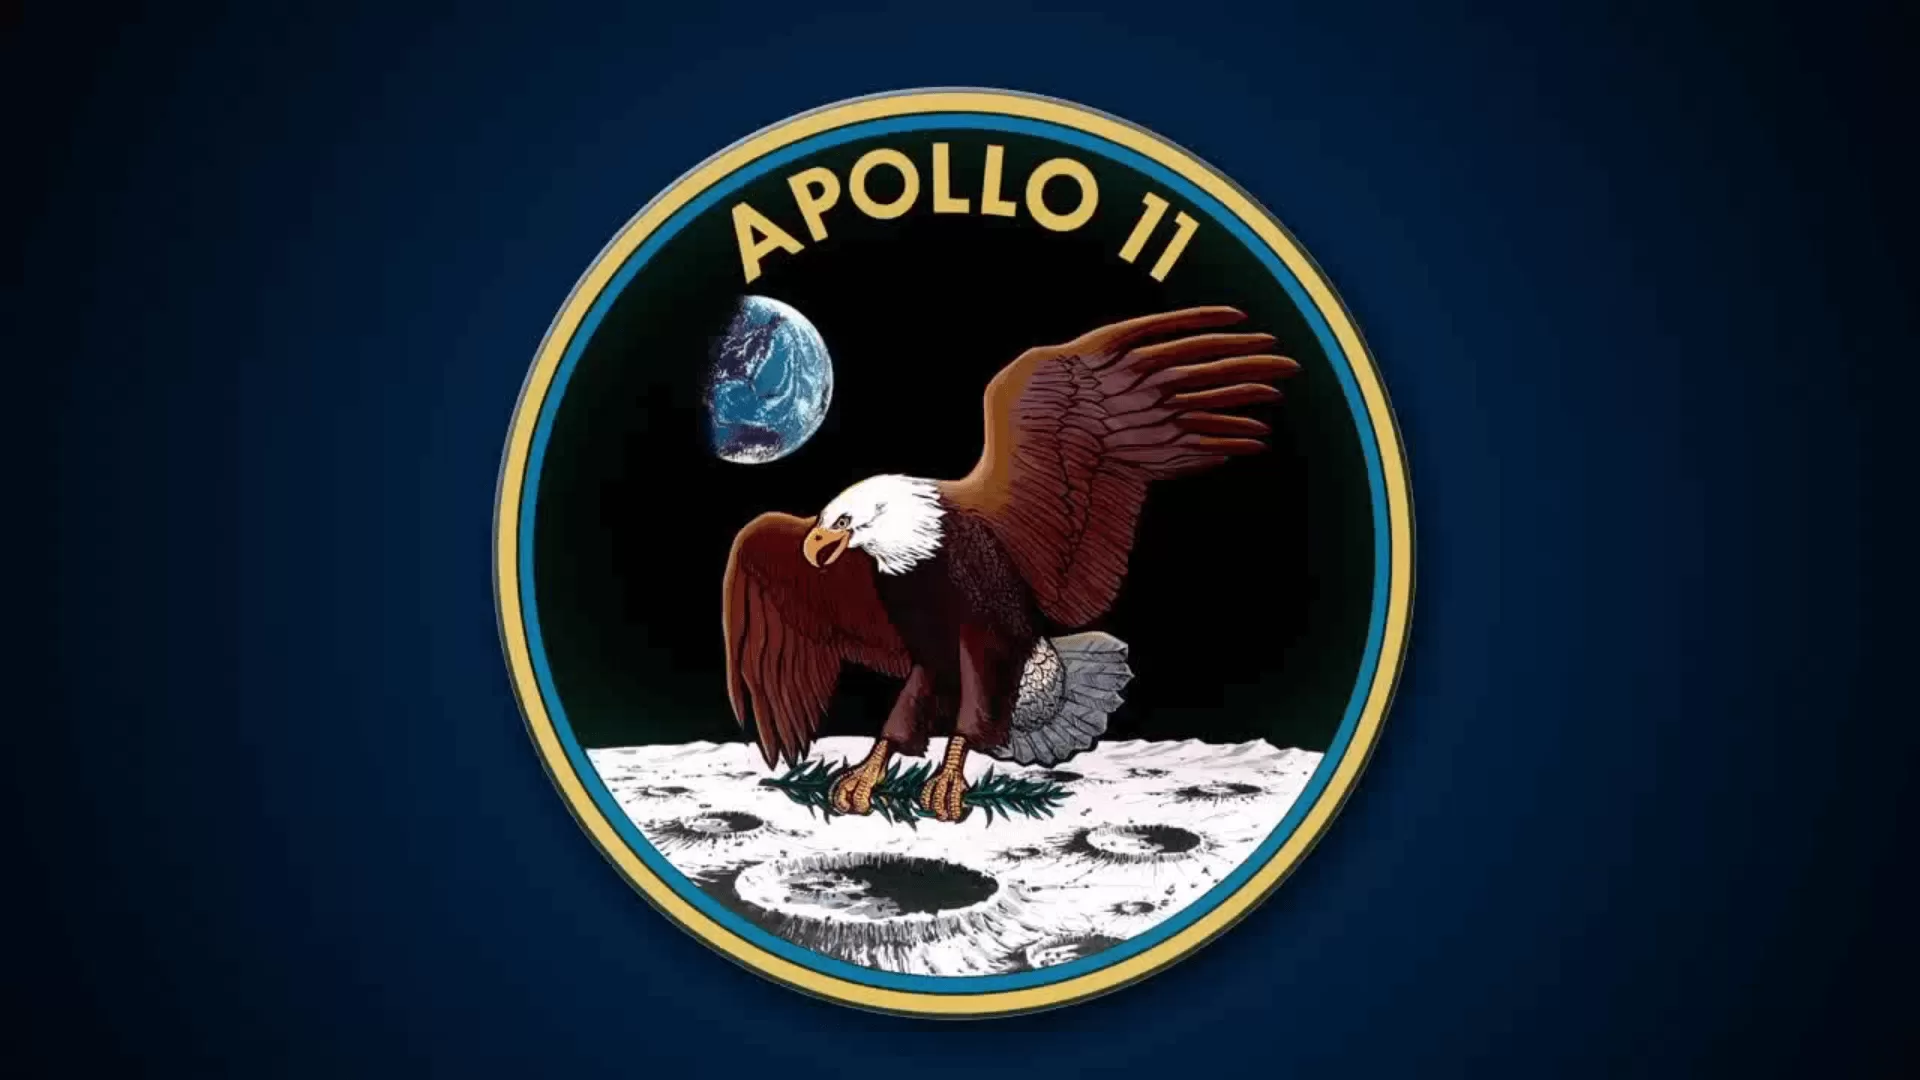 Apollo 11 - İnsanoğlunun Gerçekleştirdiği Büyük Adımın 53. Yılı Kutlu Olsun!